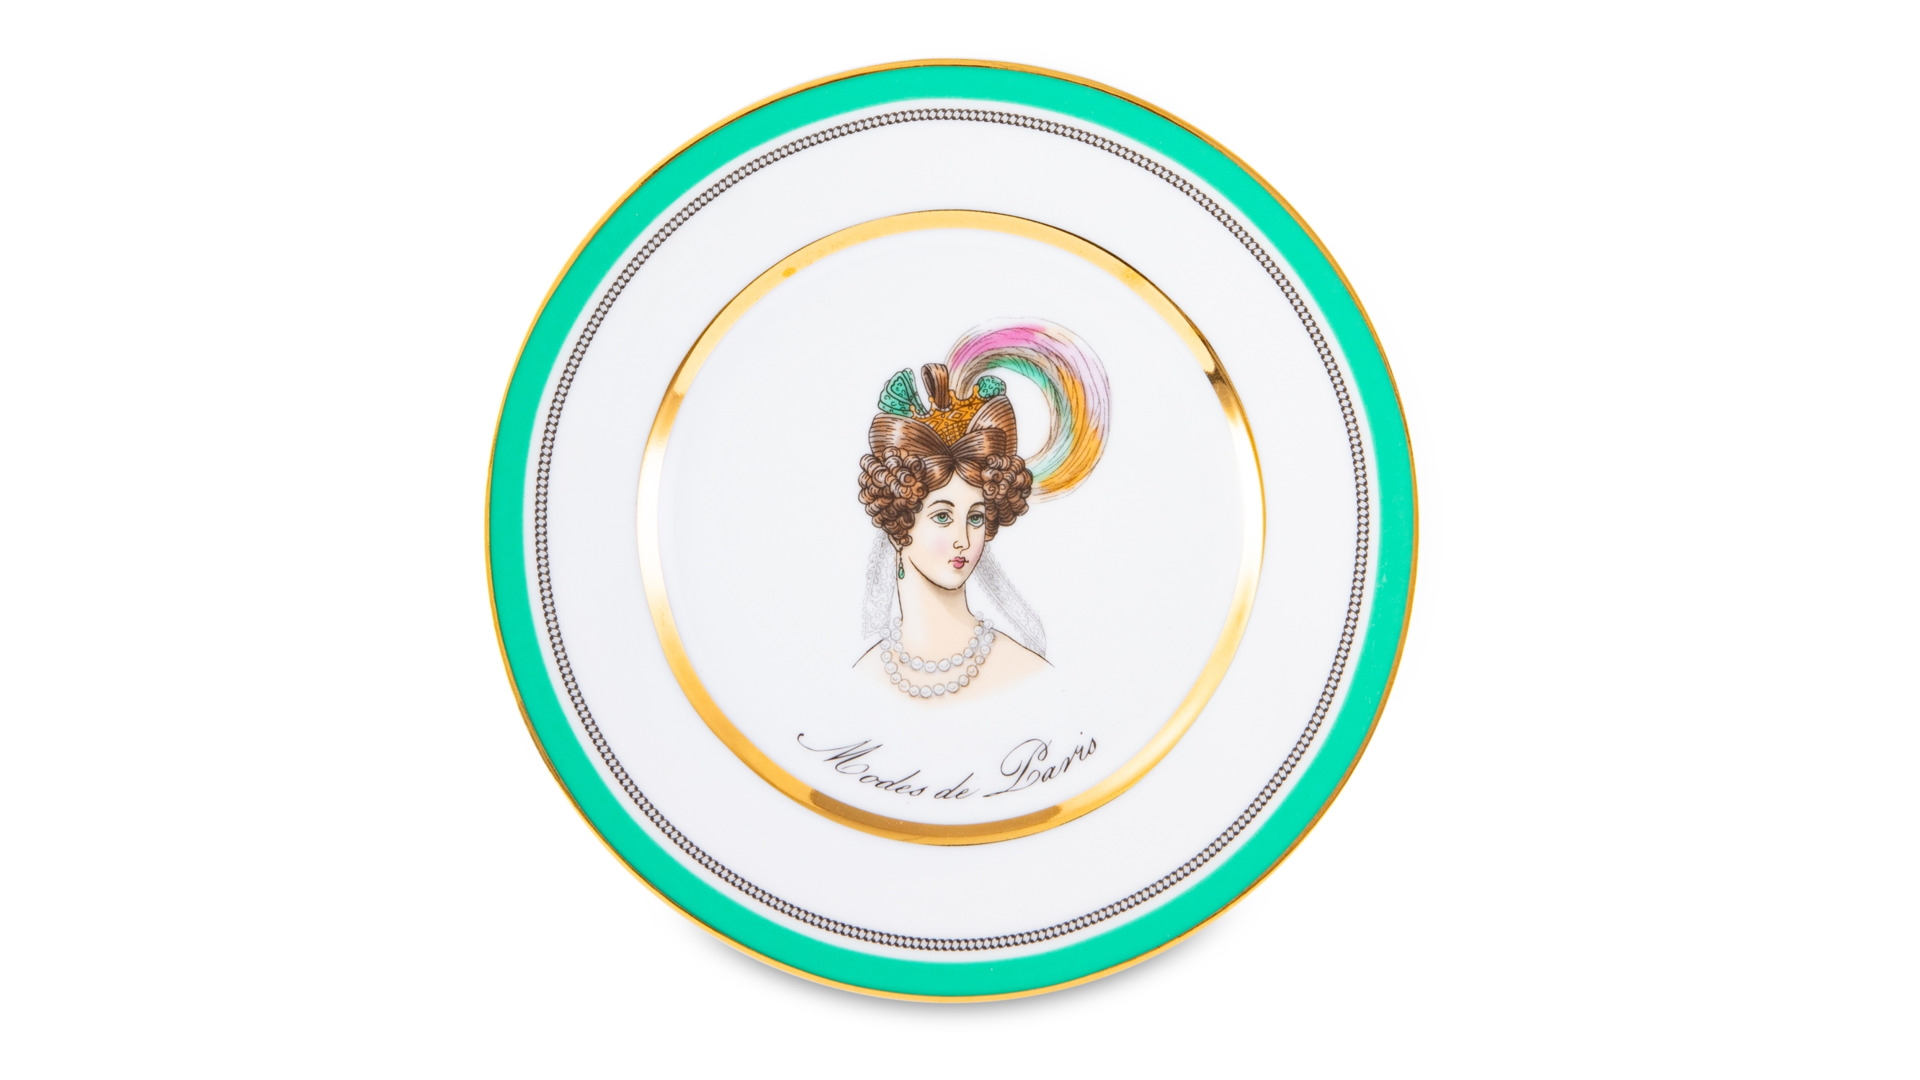 Тарелка десертная ИФЗ Modes de Paris Европейская-2,18 см, фарфор, зеленый, п/к твердый